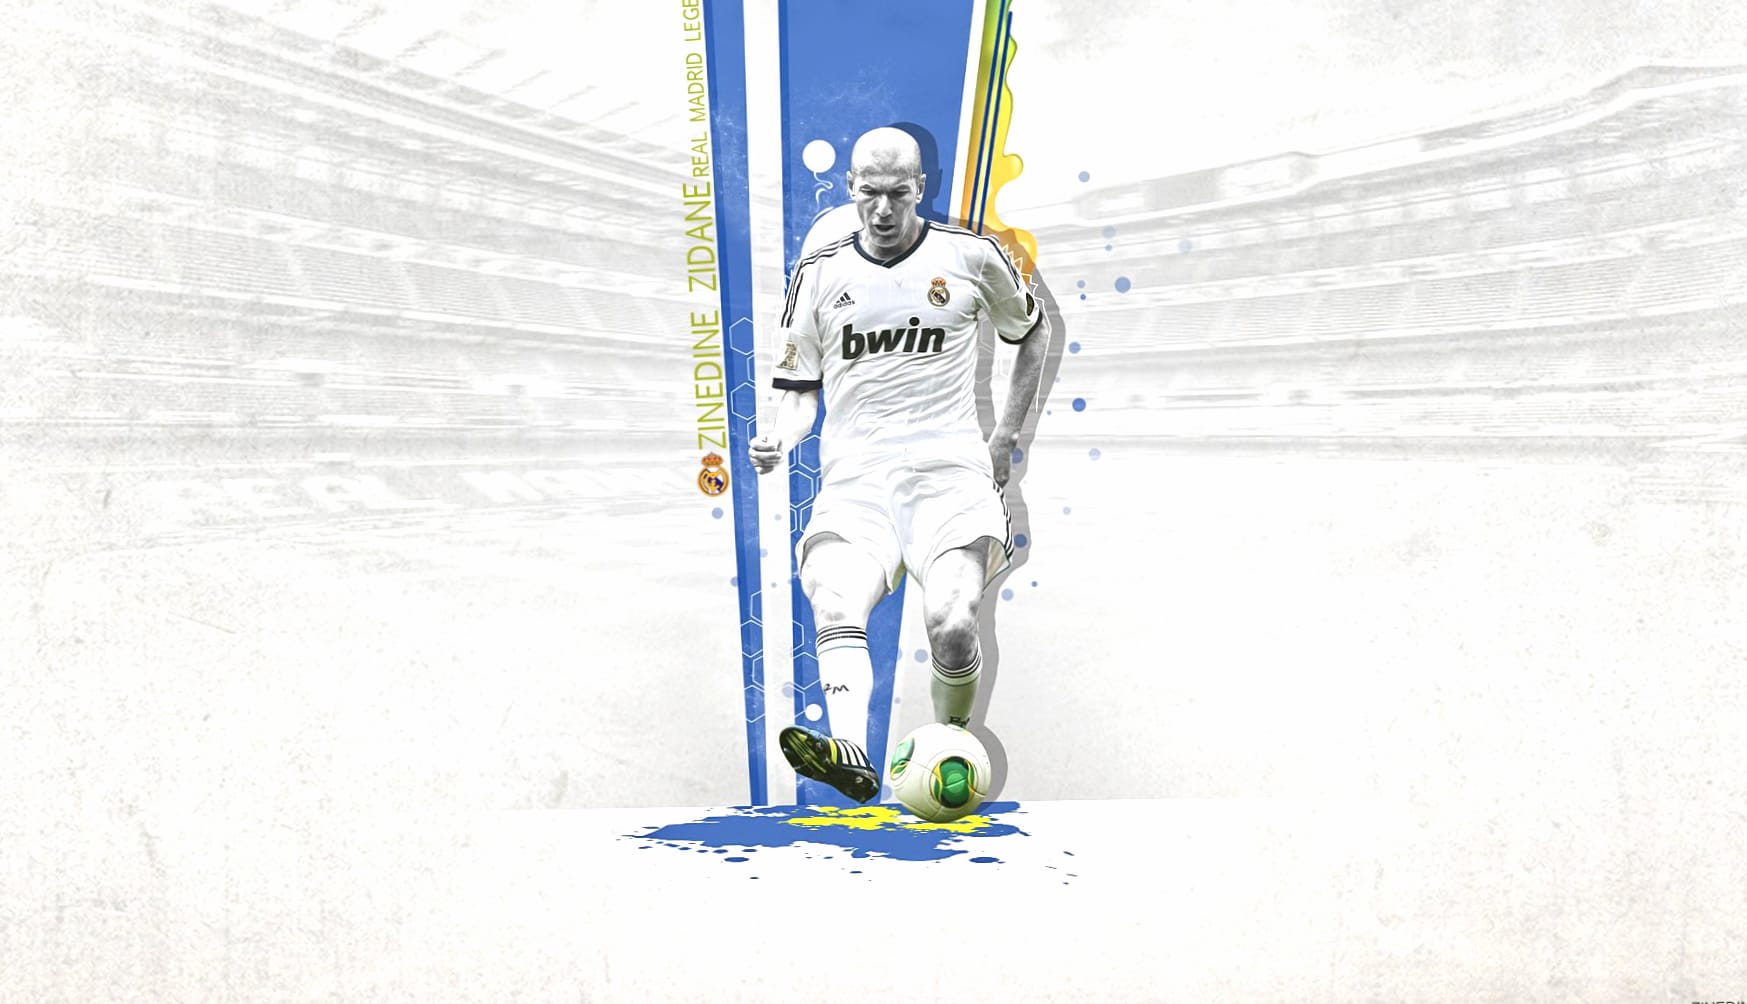 Zinedine Zidane at 1280 x 960 size wallpapers HD quality